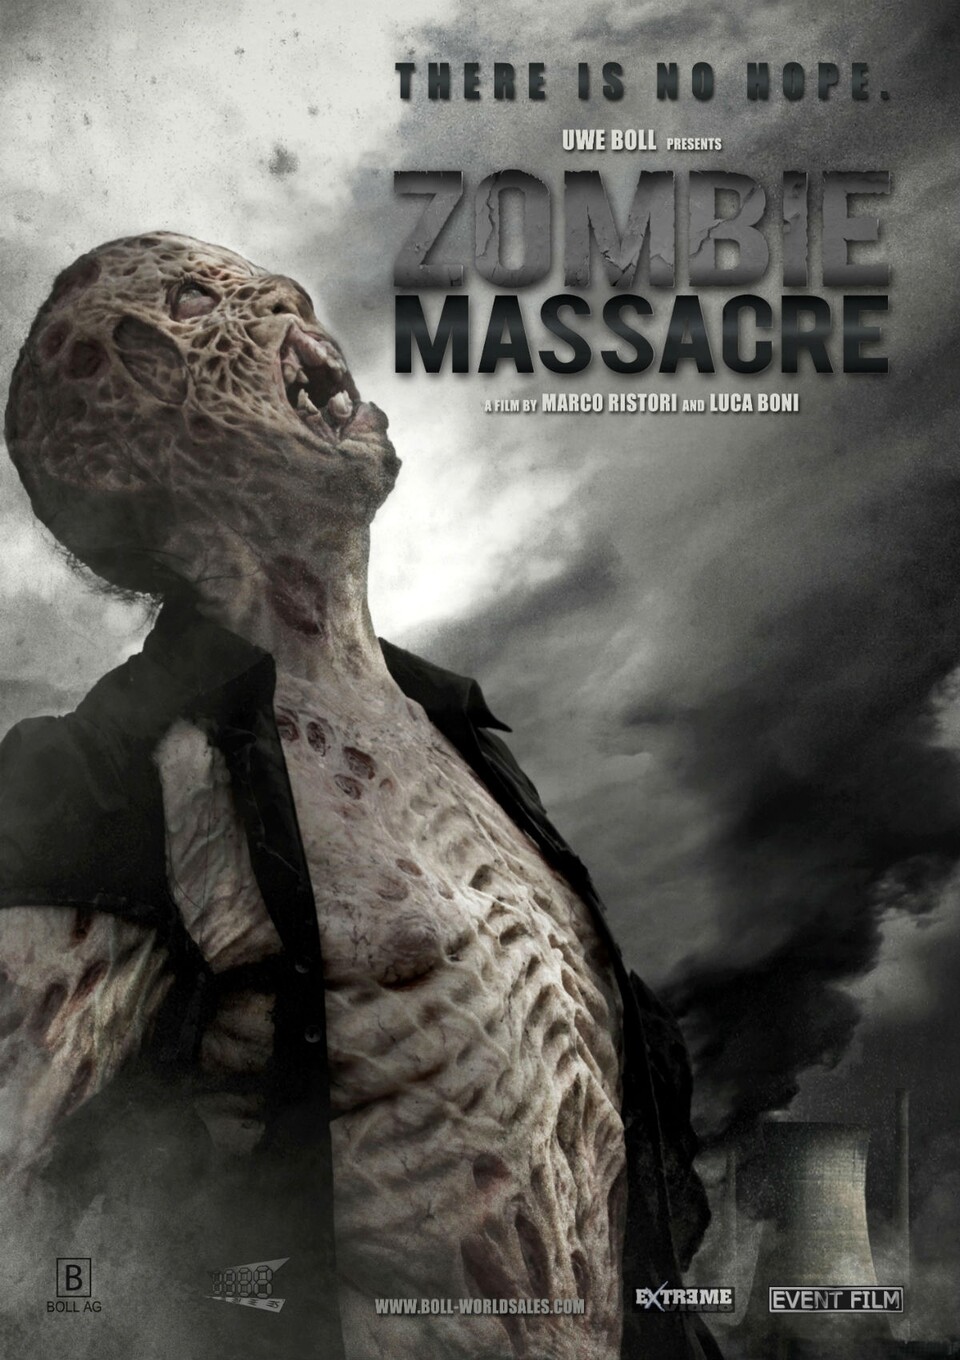 Zombie Massacre von Uwe Boll soll sich an Filmen wie 28 Days later orientieren.